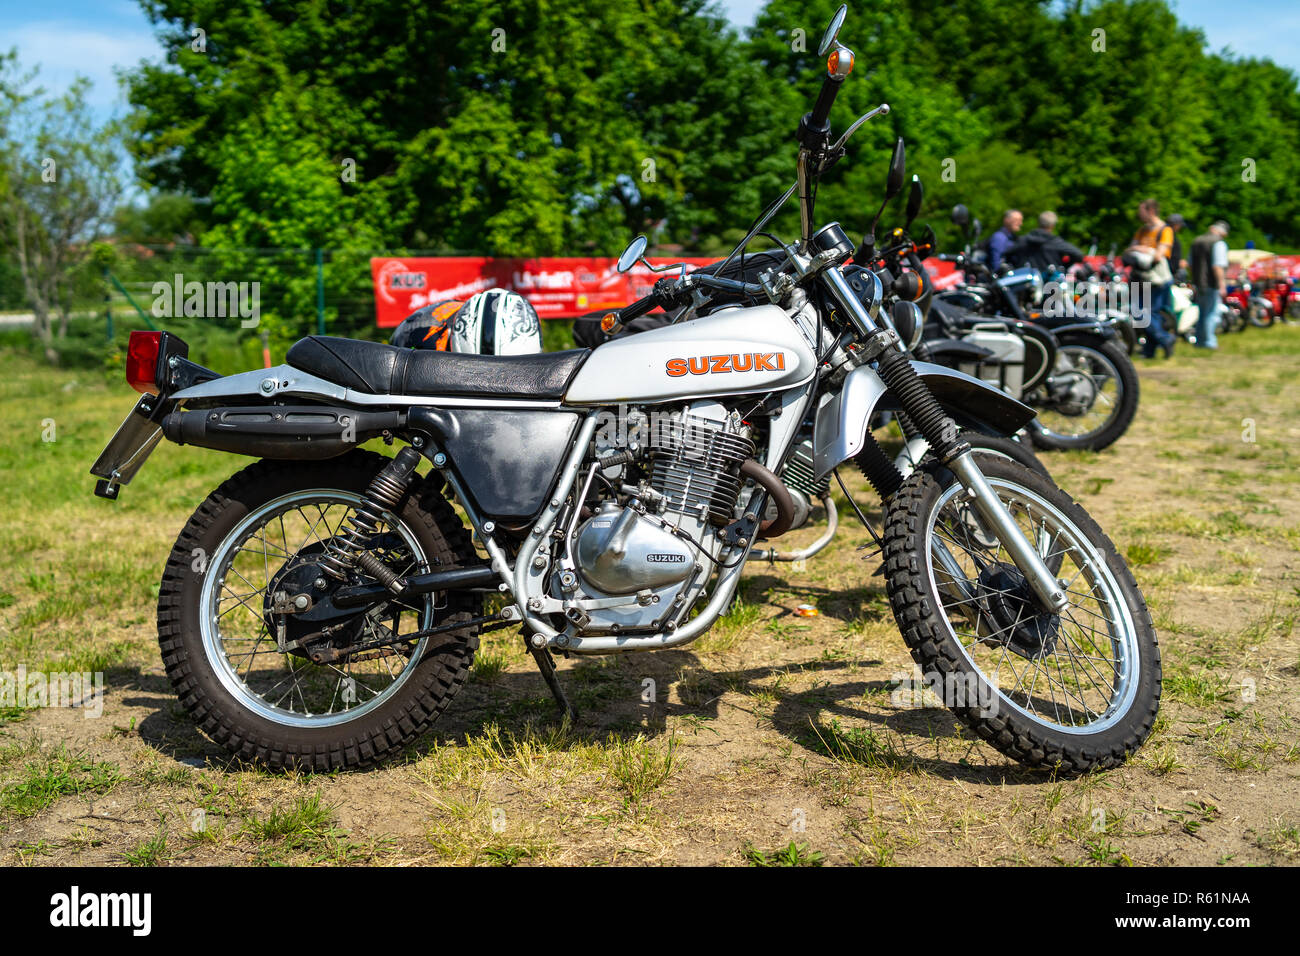 PAAREN IM GLIEN, Deutschland - 19. MAI 2018: Motorrad Suzuki SP 370, 1979. Oldtimer-show 2018 sterben. Stockfoto